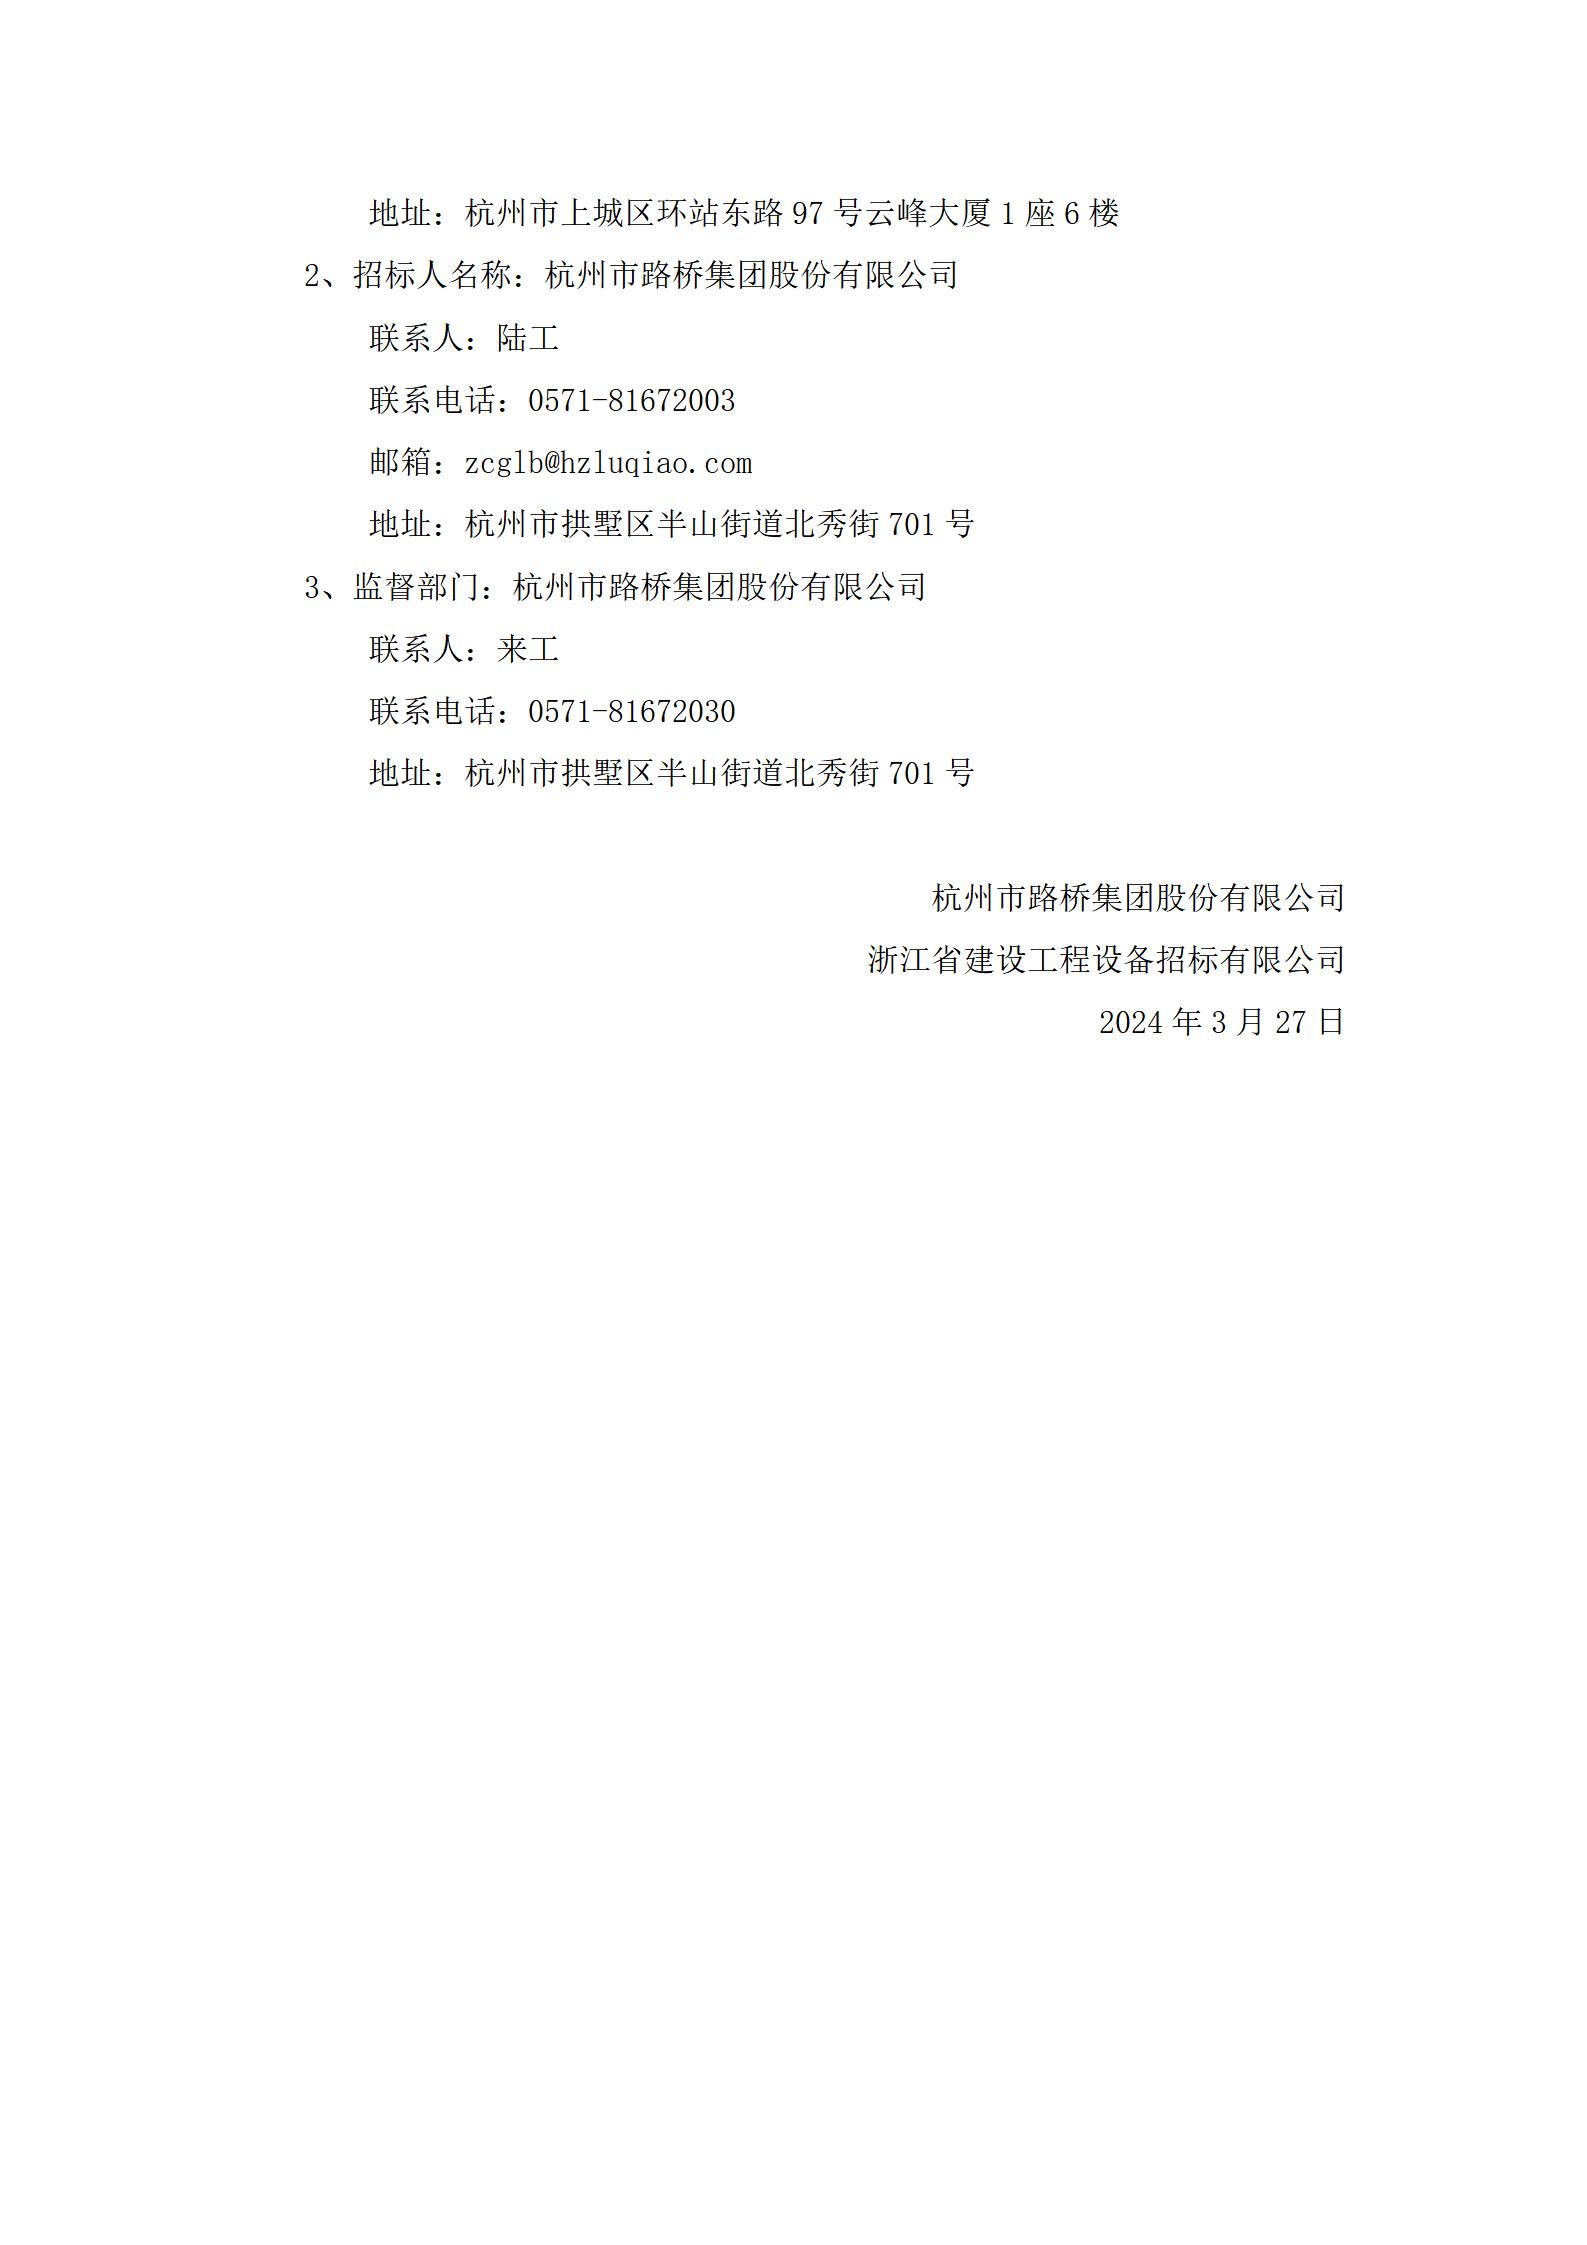 公告-IPO券商 ZJZBC-24-GK-9119-1重新招标_03.jpg